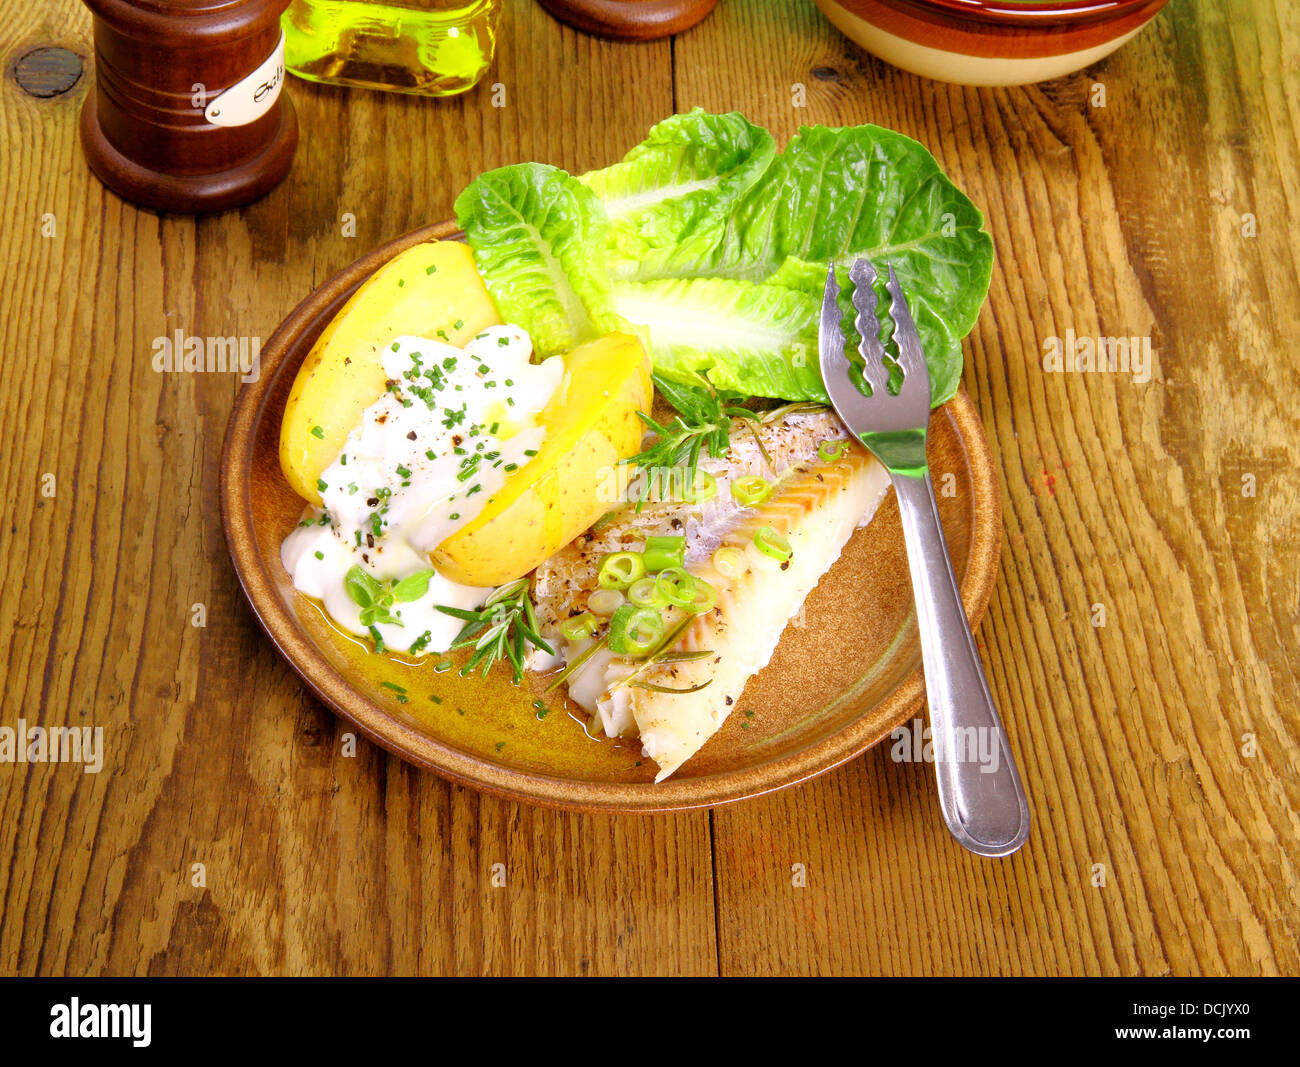 Le poisson, les pommes de terre avec du fromage cottage, salade et la fourche, vue du dessus Banque D'Images